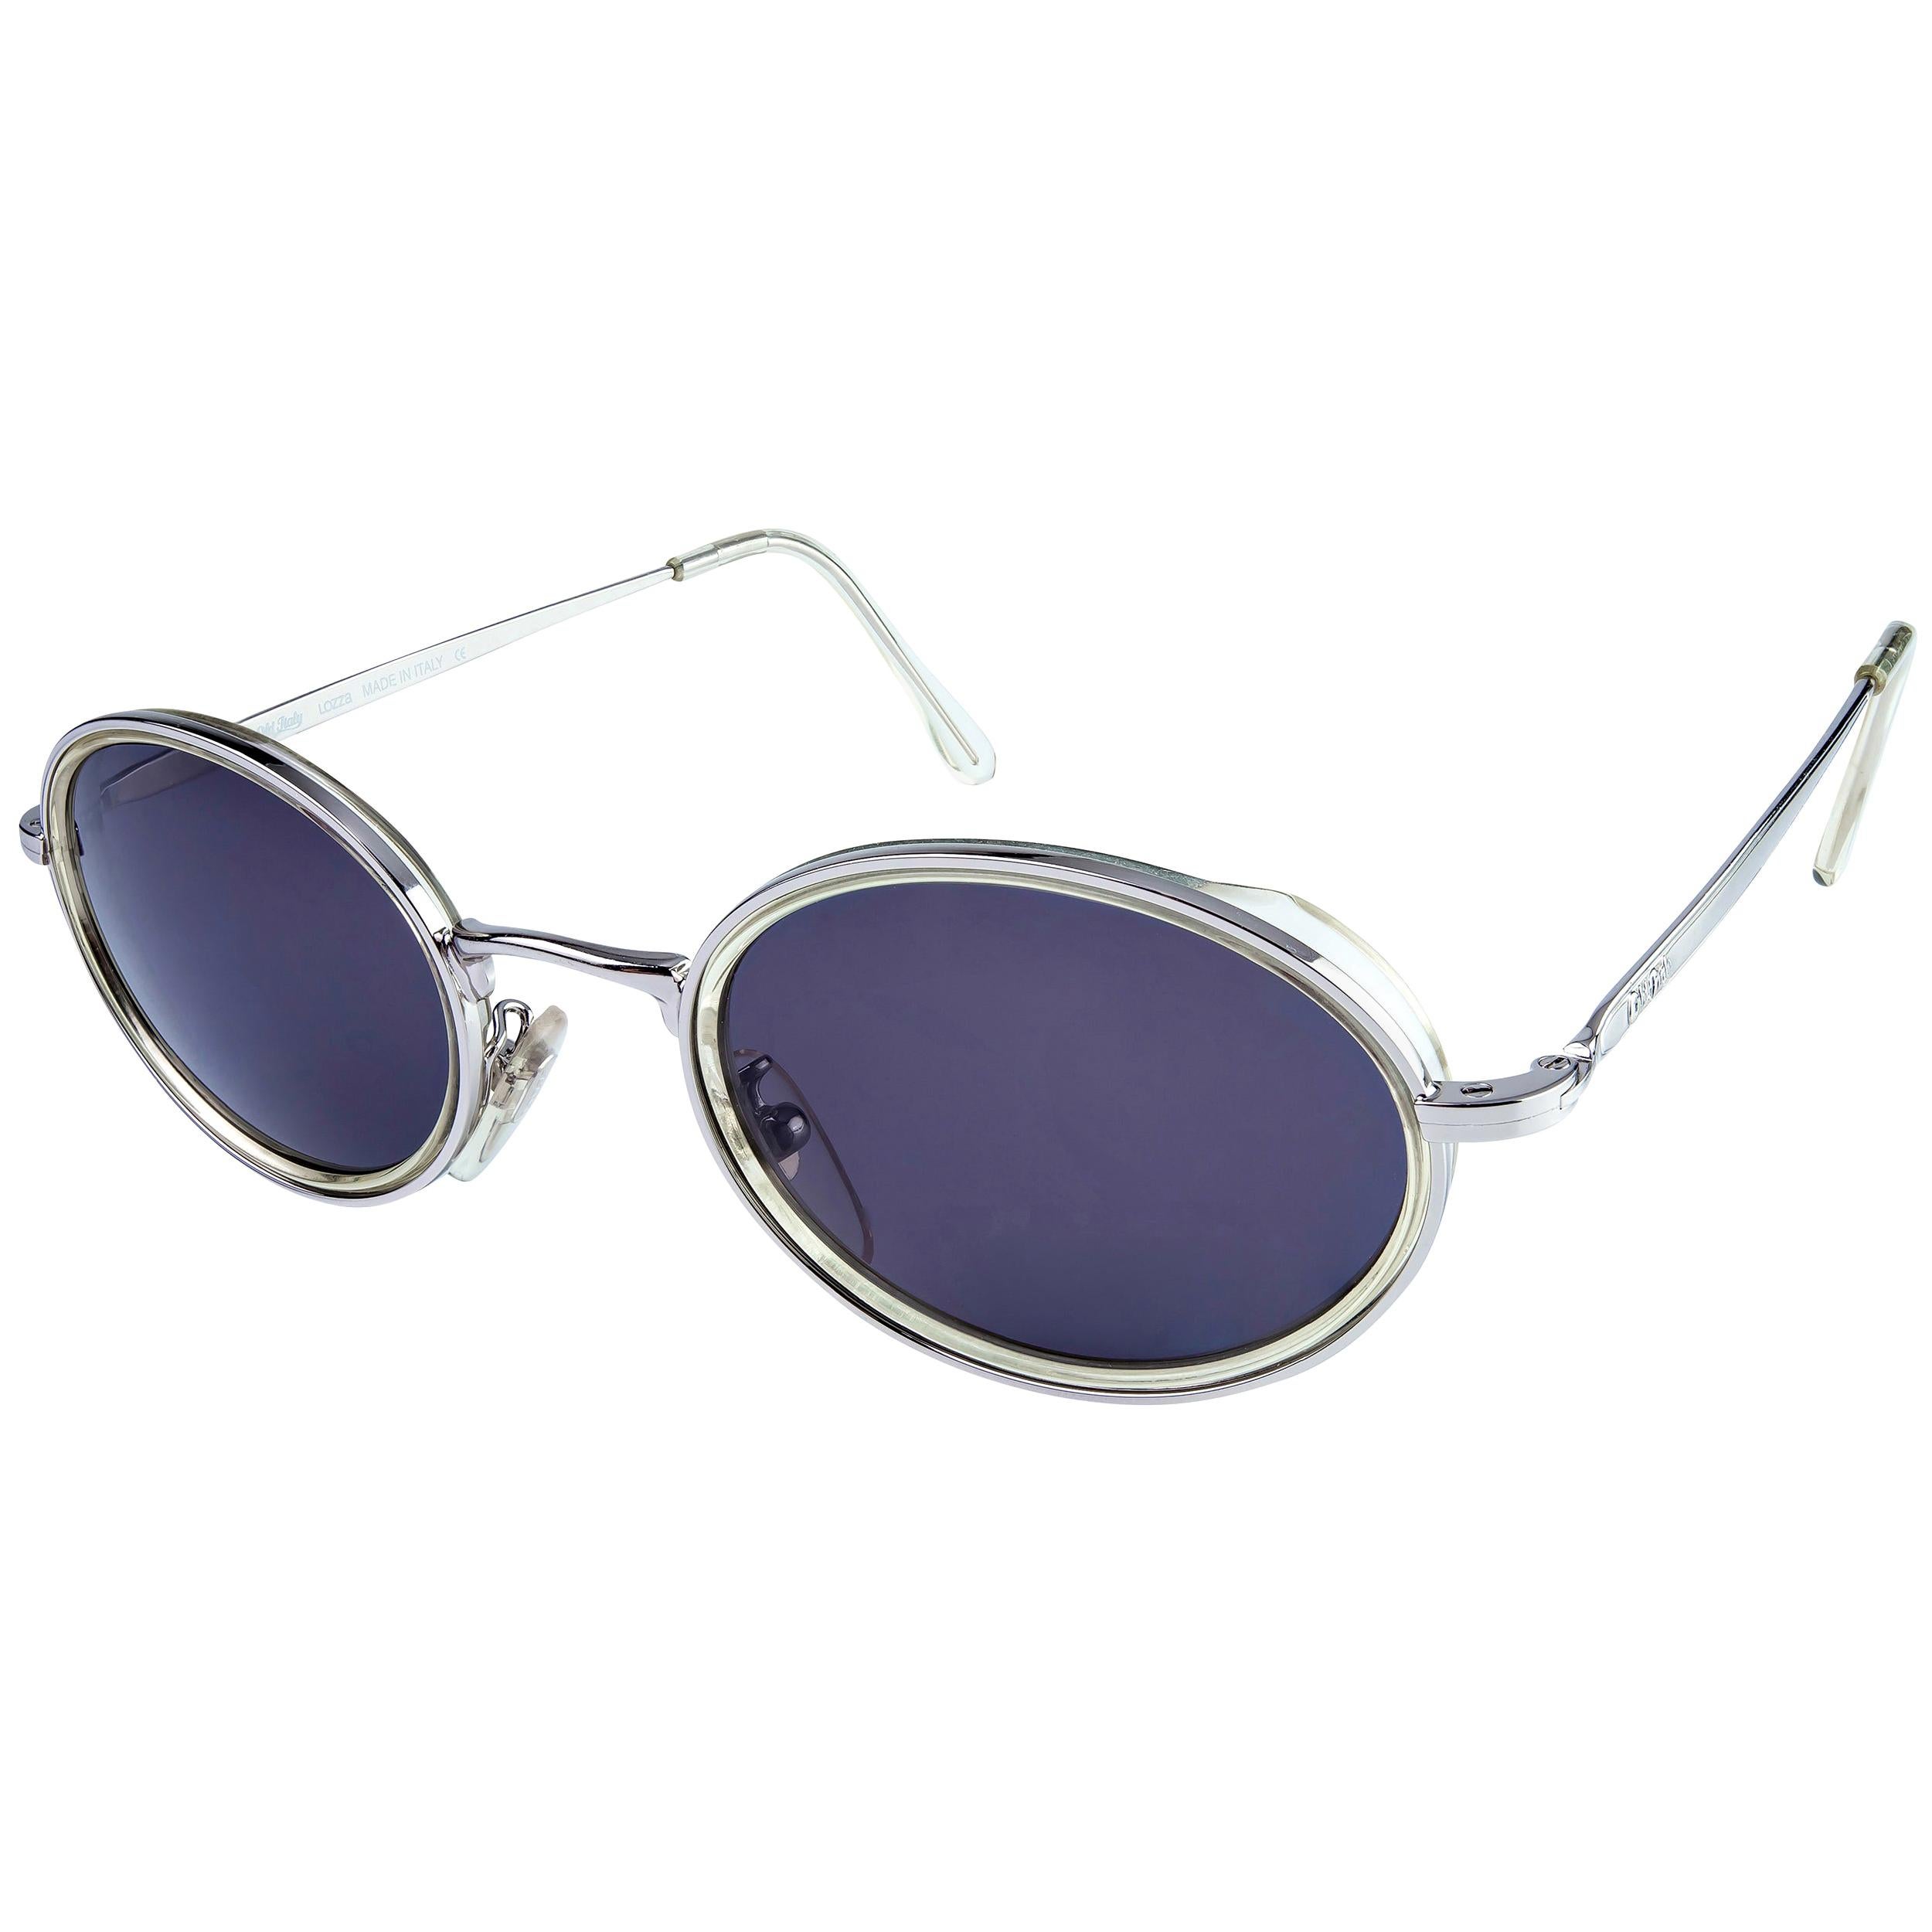 Vintage-Sonnenbrille von Lozza, hergestellt in Italien. Ovale Sonnenbrille aus den 80ern